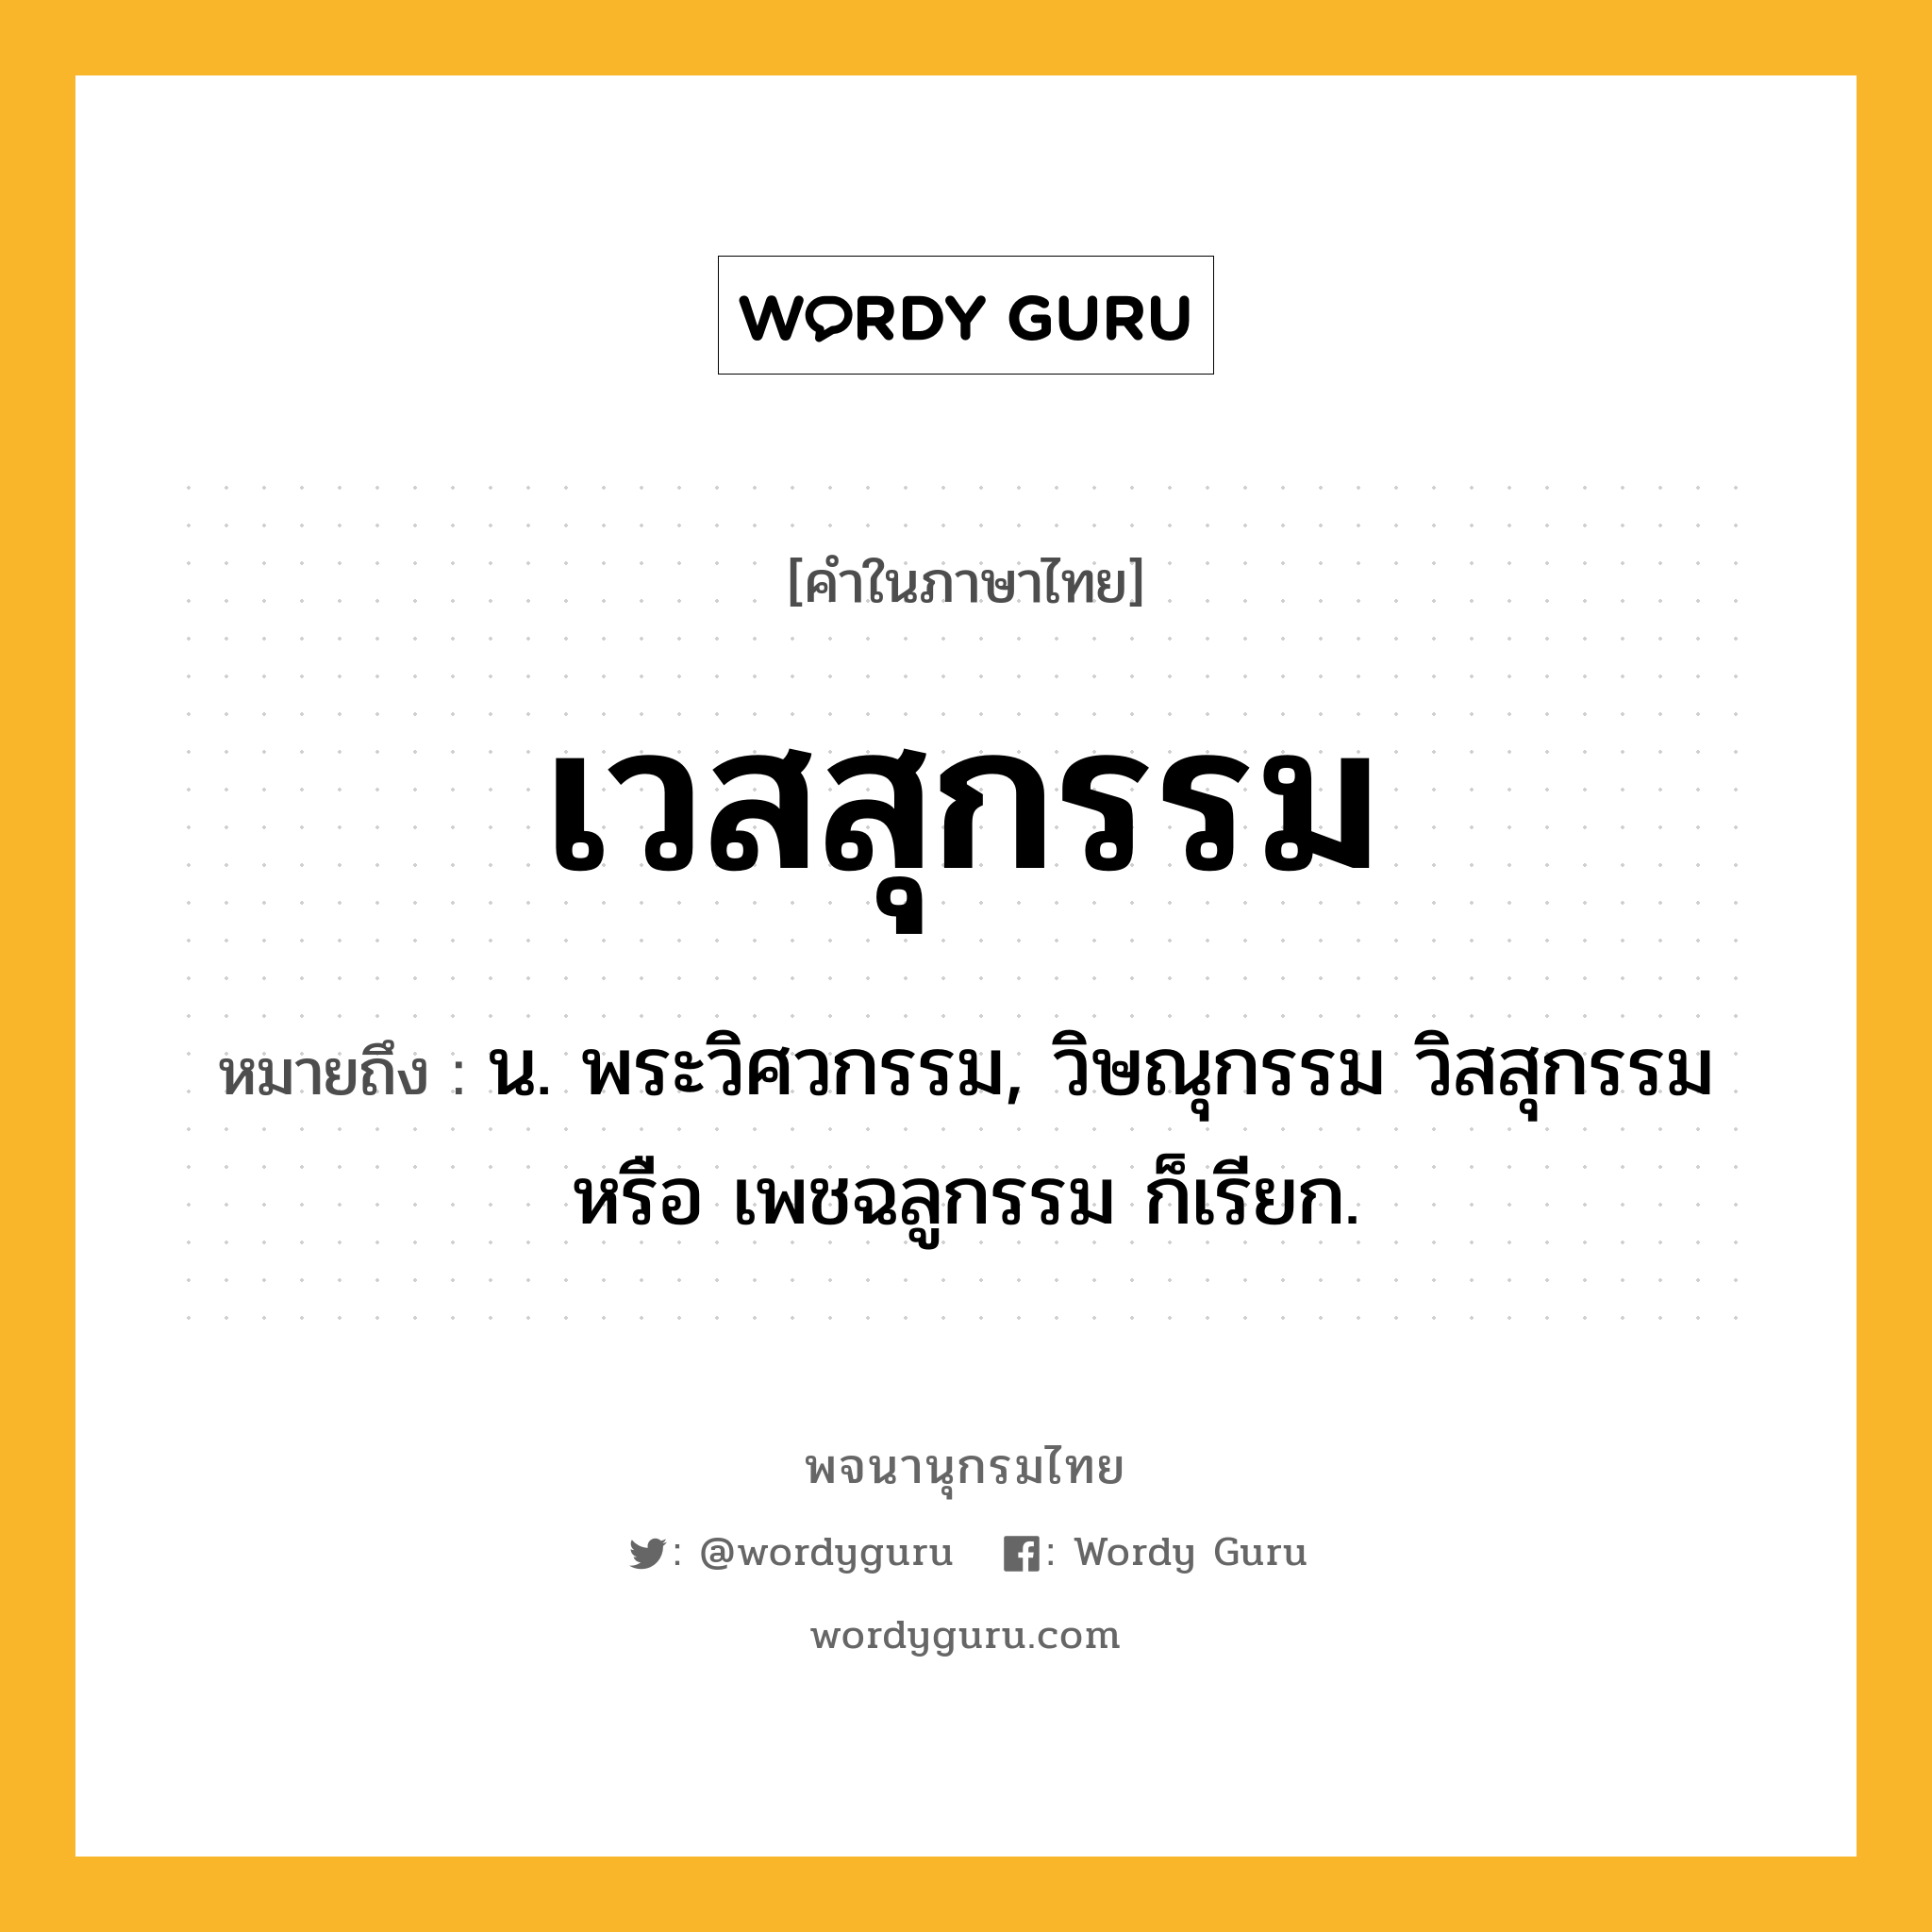 เวสสุกรรม ความหมาย หมายถึงอะไร?, คำในภาษาไทย เวสสุกรรม หมายถึง น. พระวิศวกรรม, วิษณุกรรม วิสสุกรรม หรือ เพชฉลูกรรม ก็เรียก.